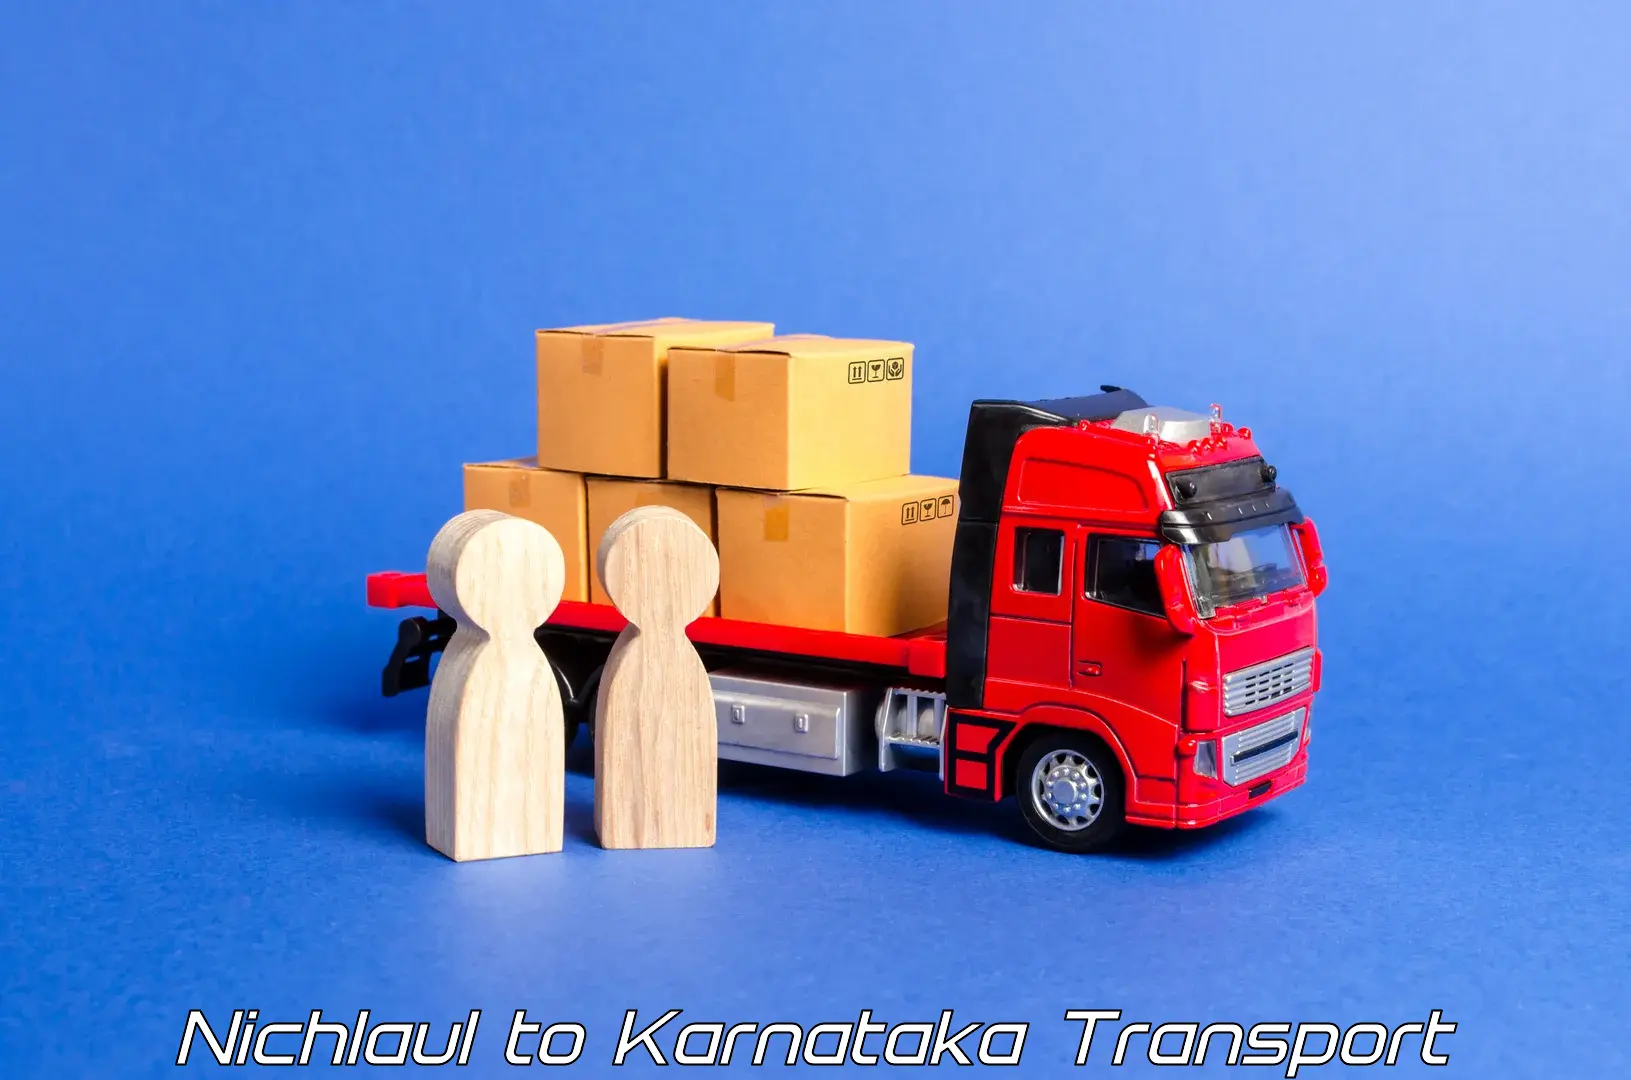 Commercial transport service Nichlaul to Kotturu